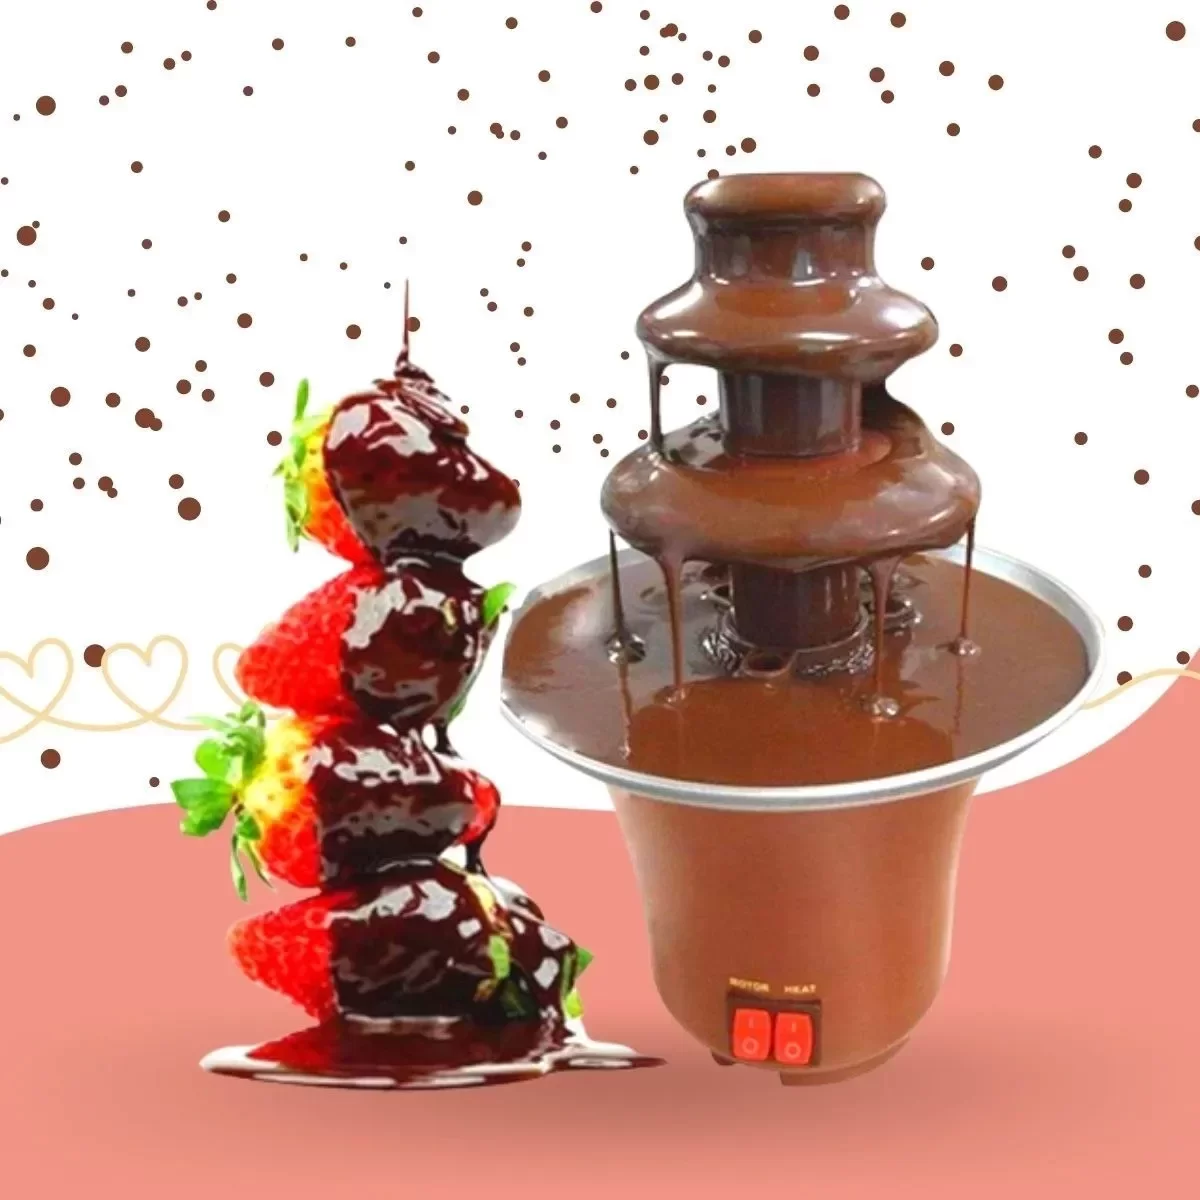 2022 fonte de chocolate fondue evento casamento crianças aniversário festa festiva suprimentos natal - 6